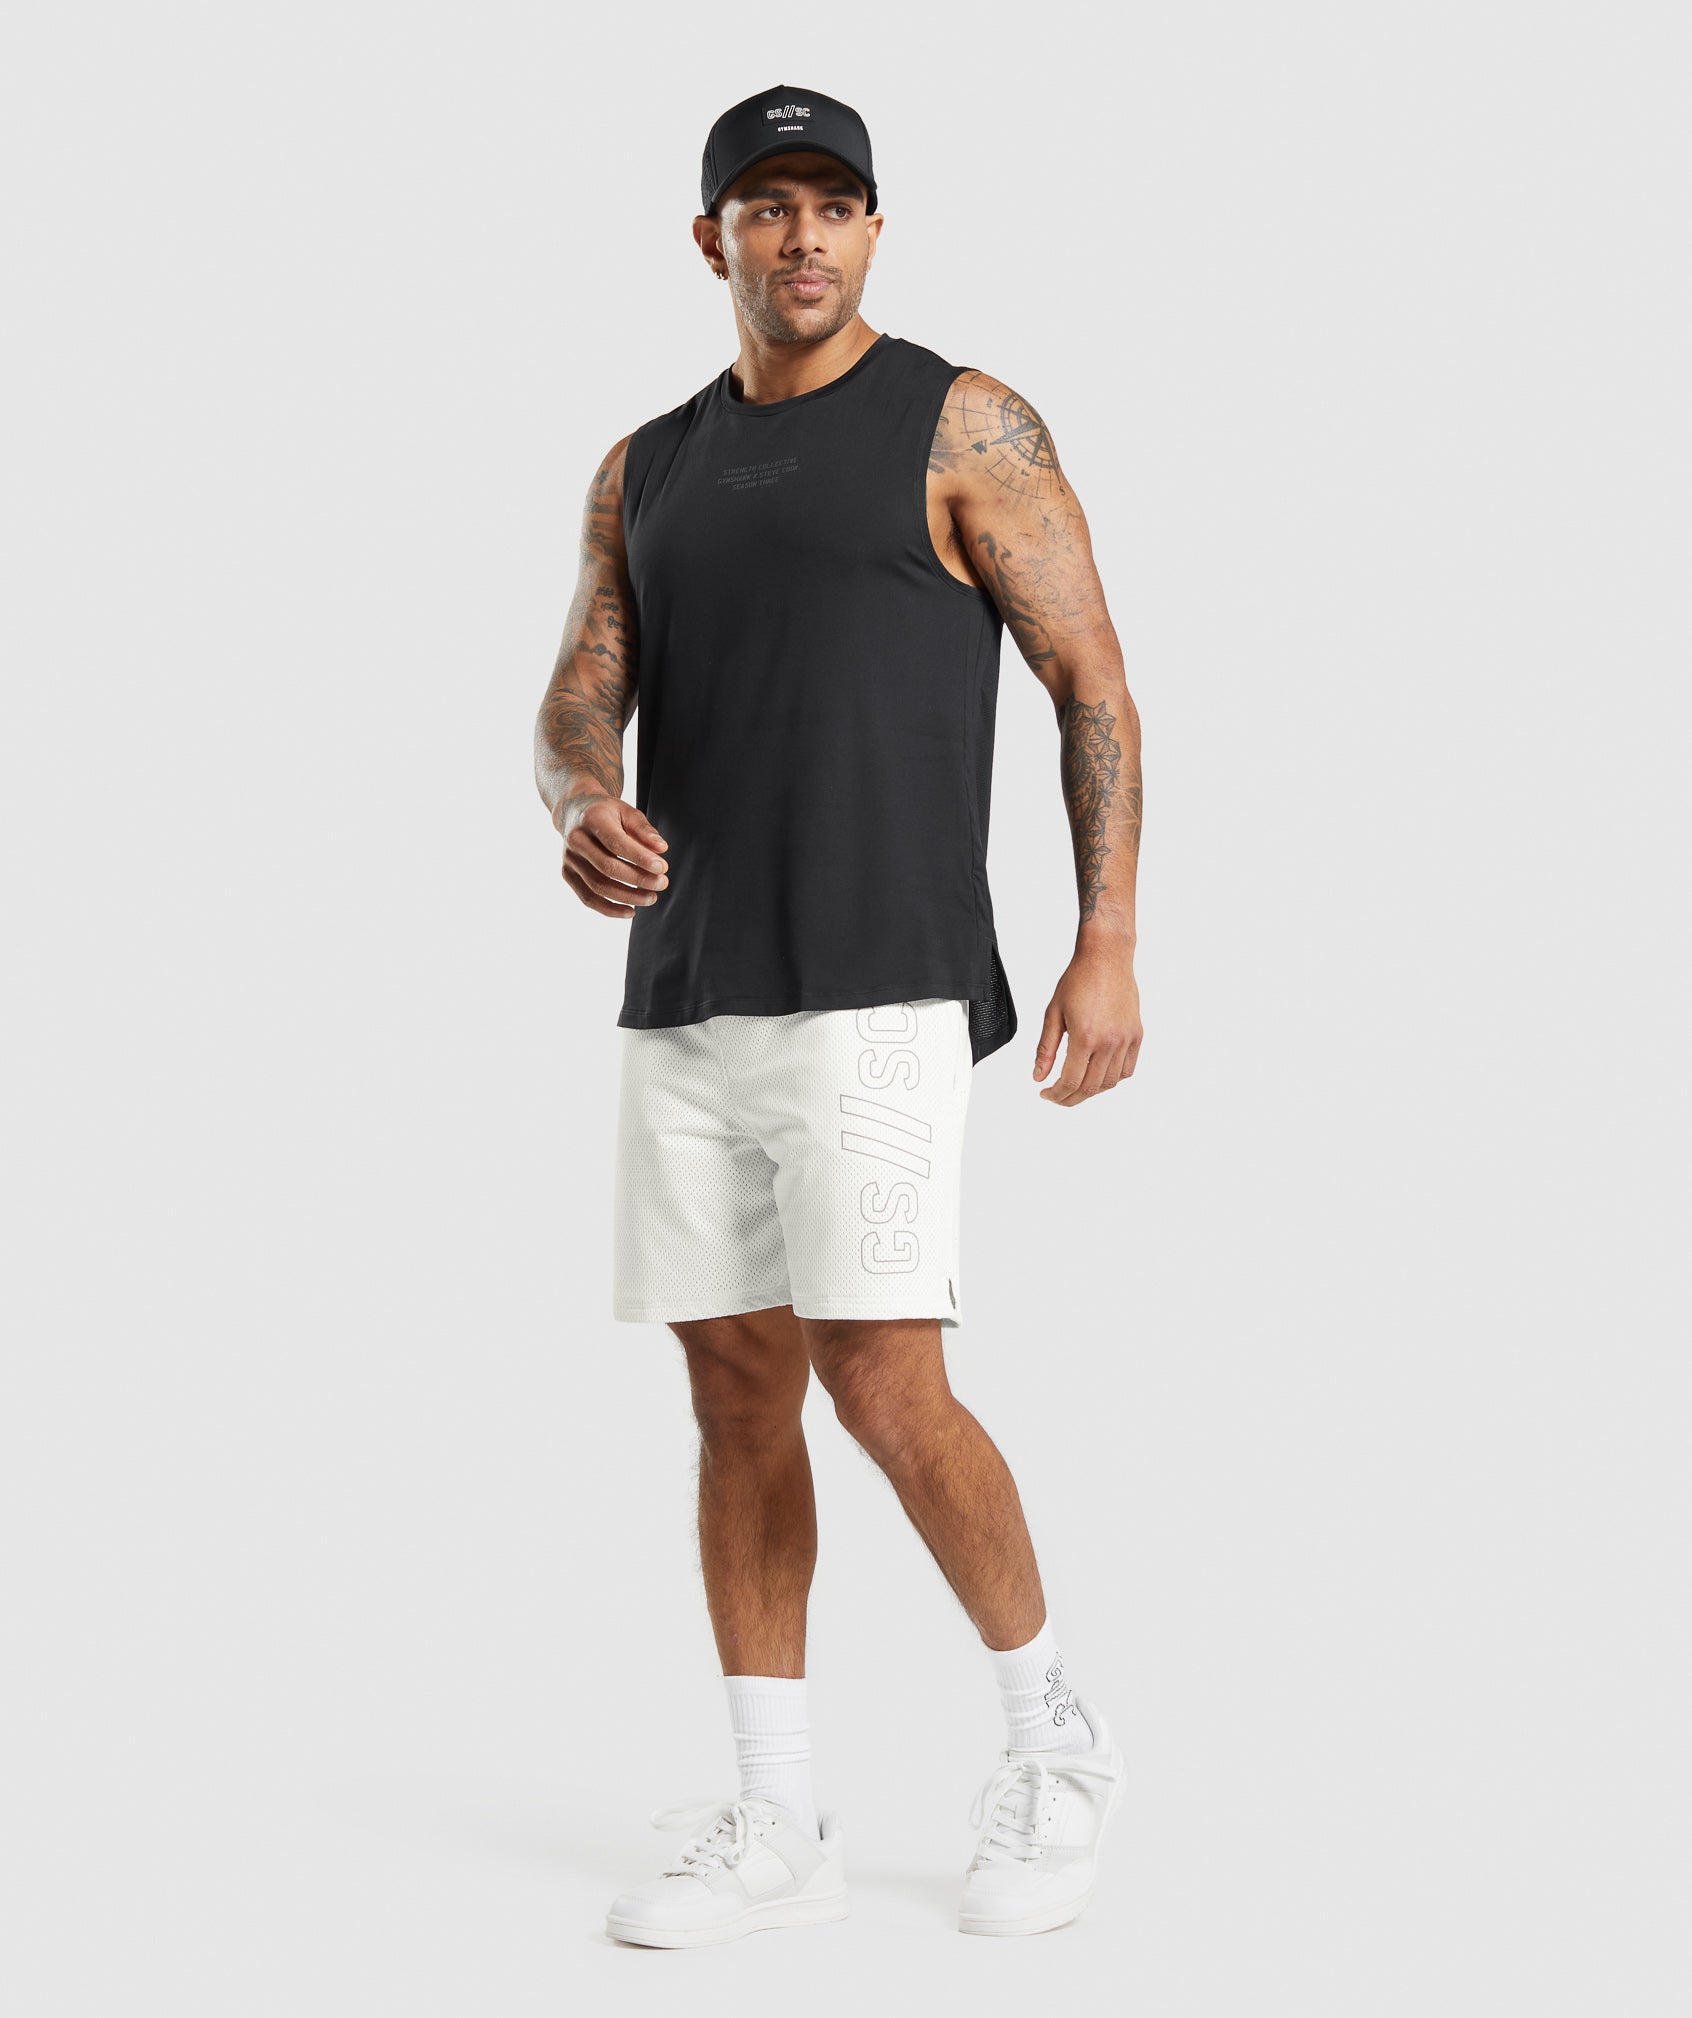 Gymshark//Steve Cook Mesh Shorts in Off White